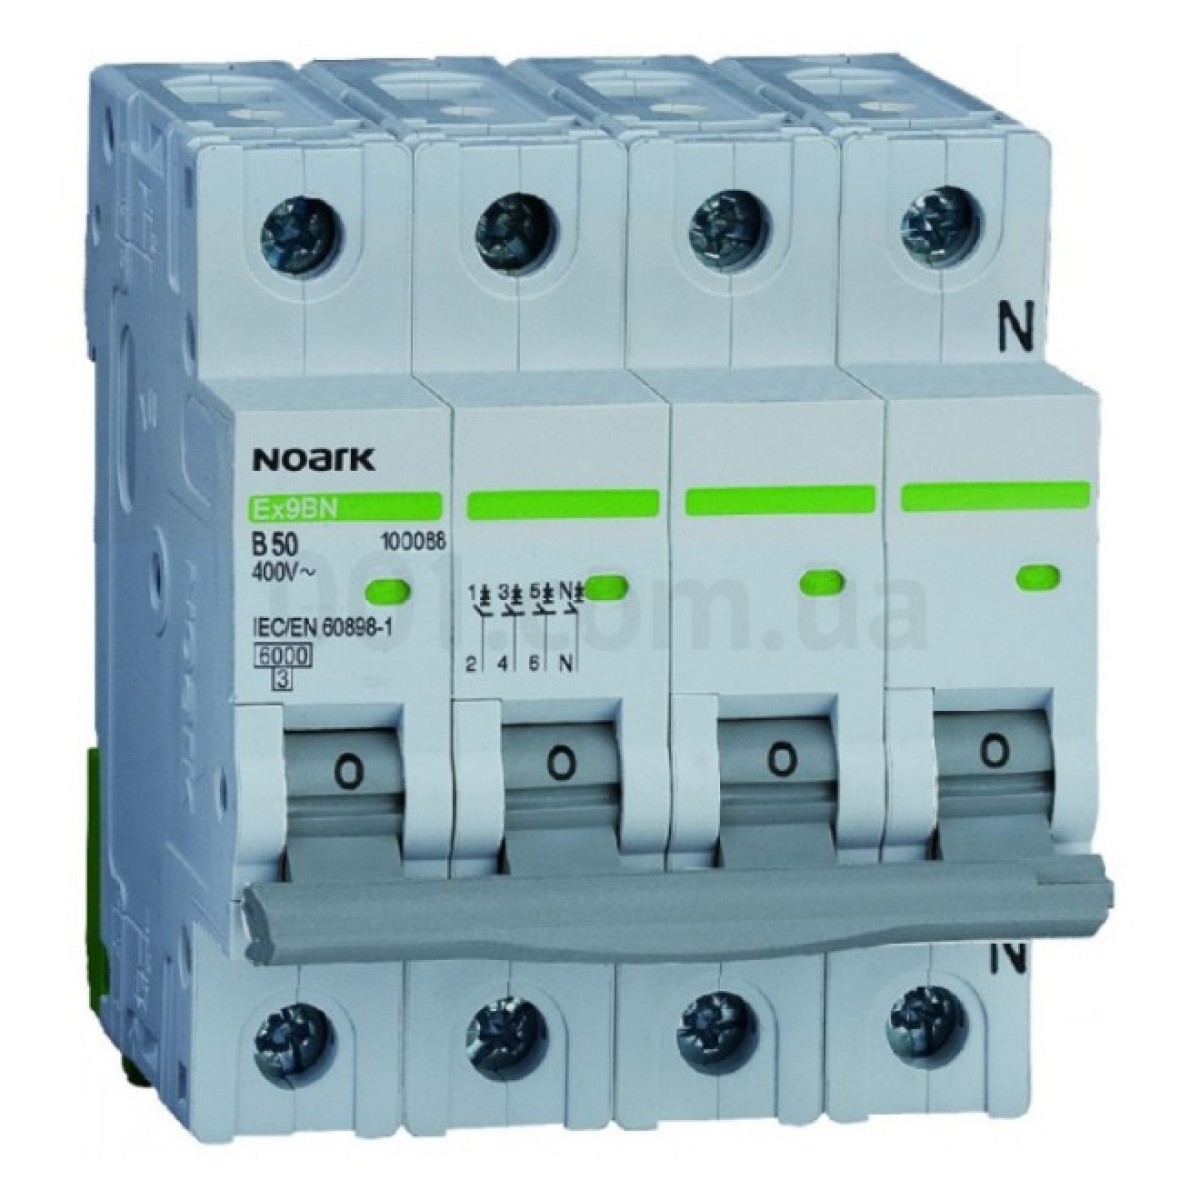 Модульний автоматичний вимикач Ex9BN 6kA хар-ка C 63A 3P+N, NOARK 256_256.jpg